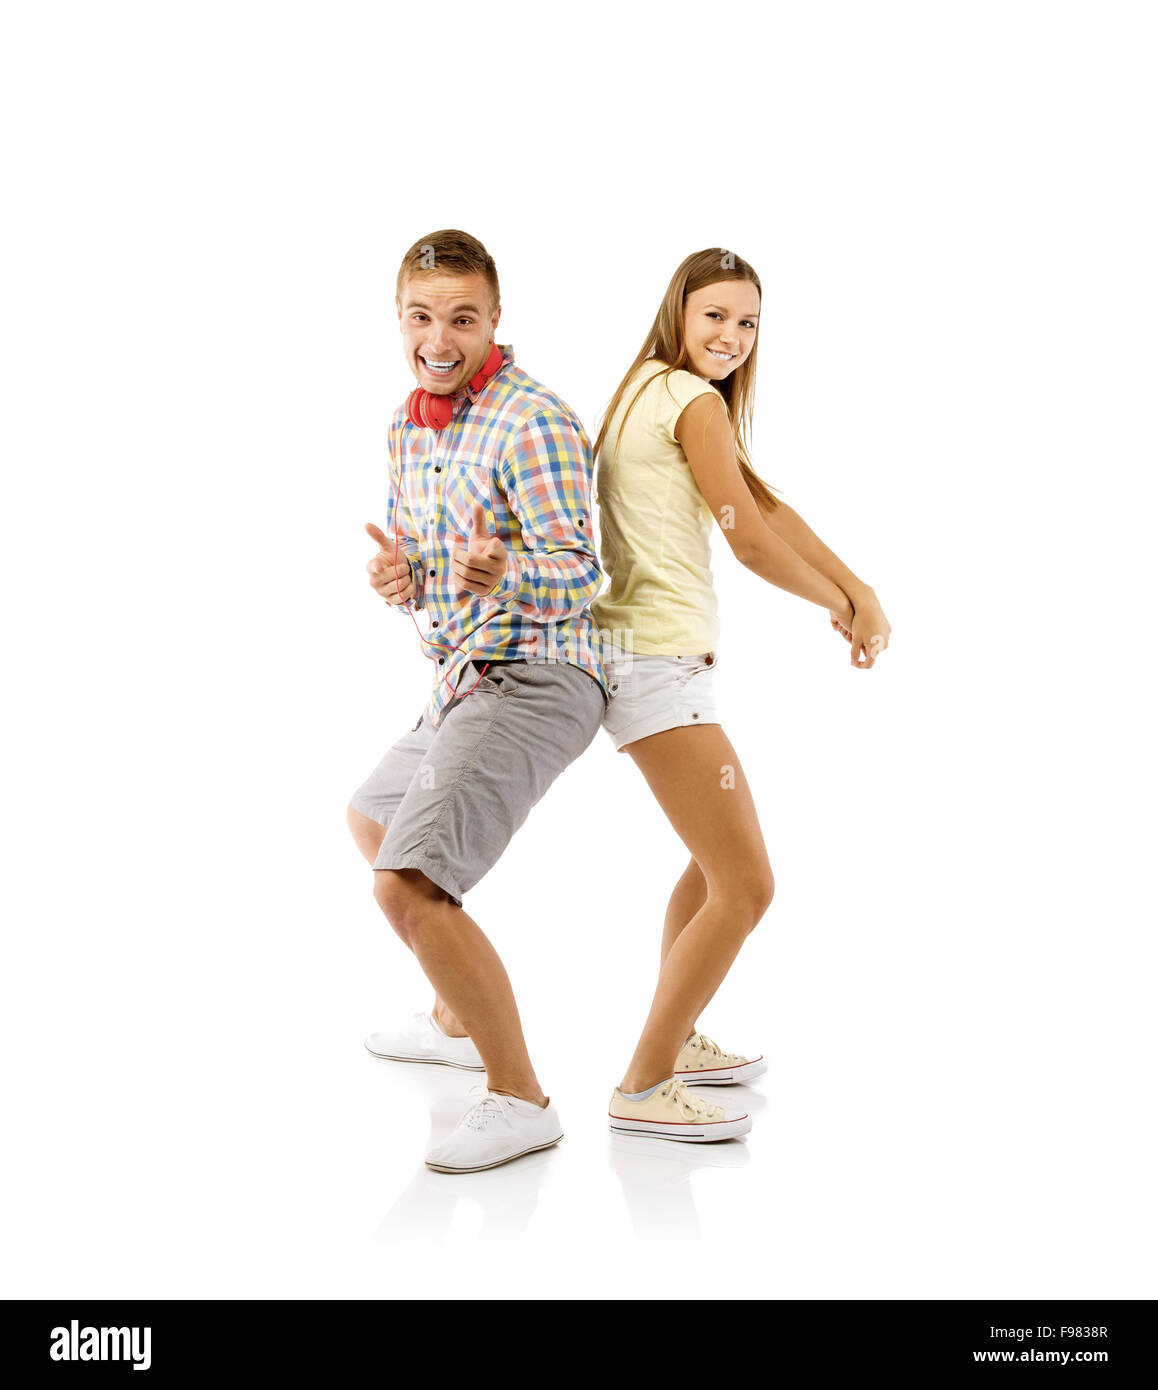 Lächelnde junge Menschen tanzen, isoliert auf weißem Hintergrund Stockfoto